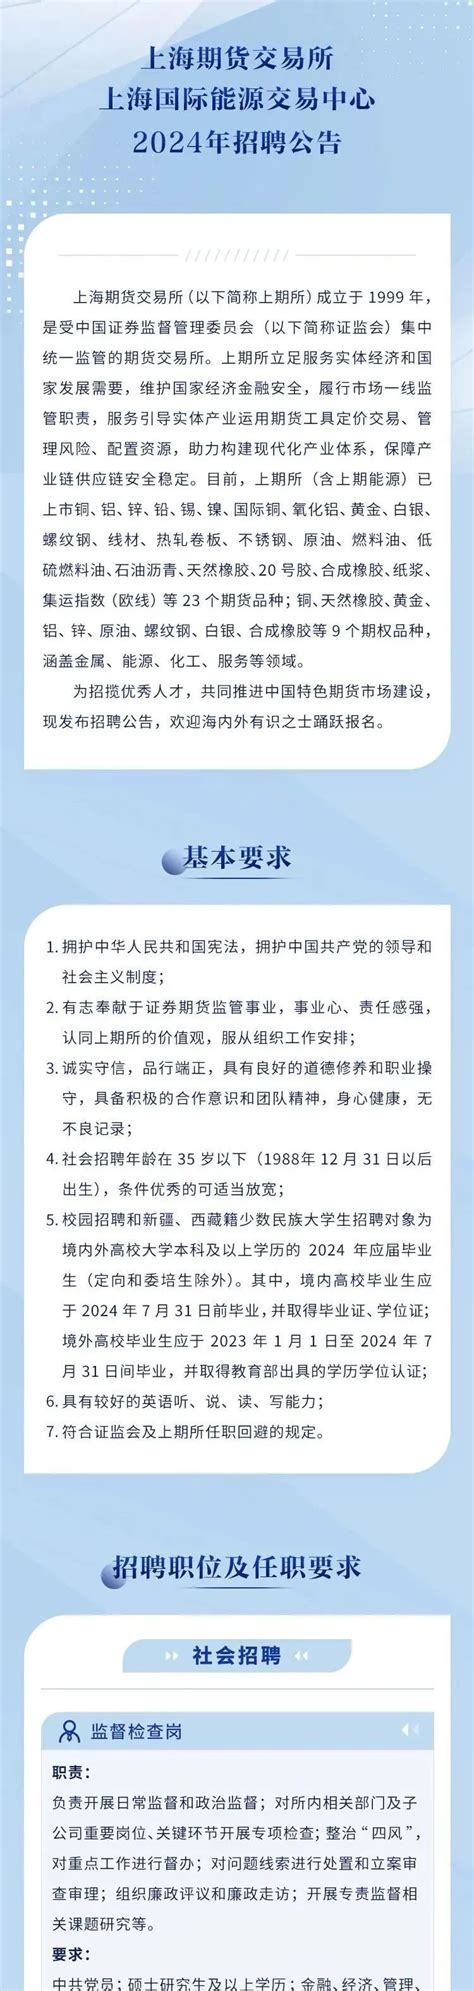 上海保险交易所官方网站